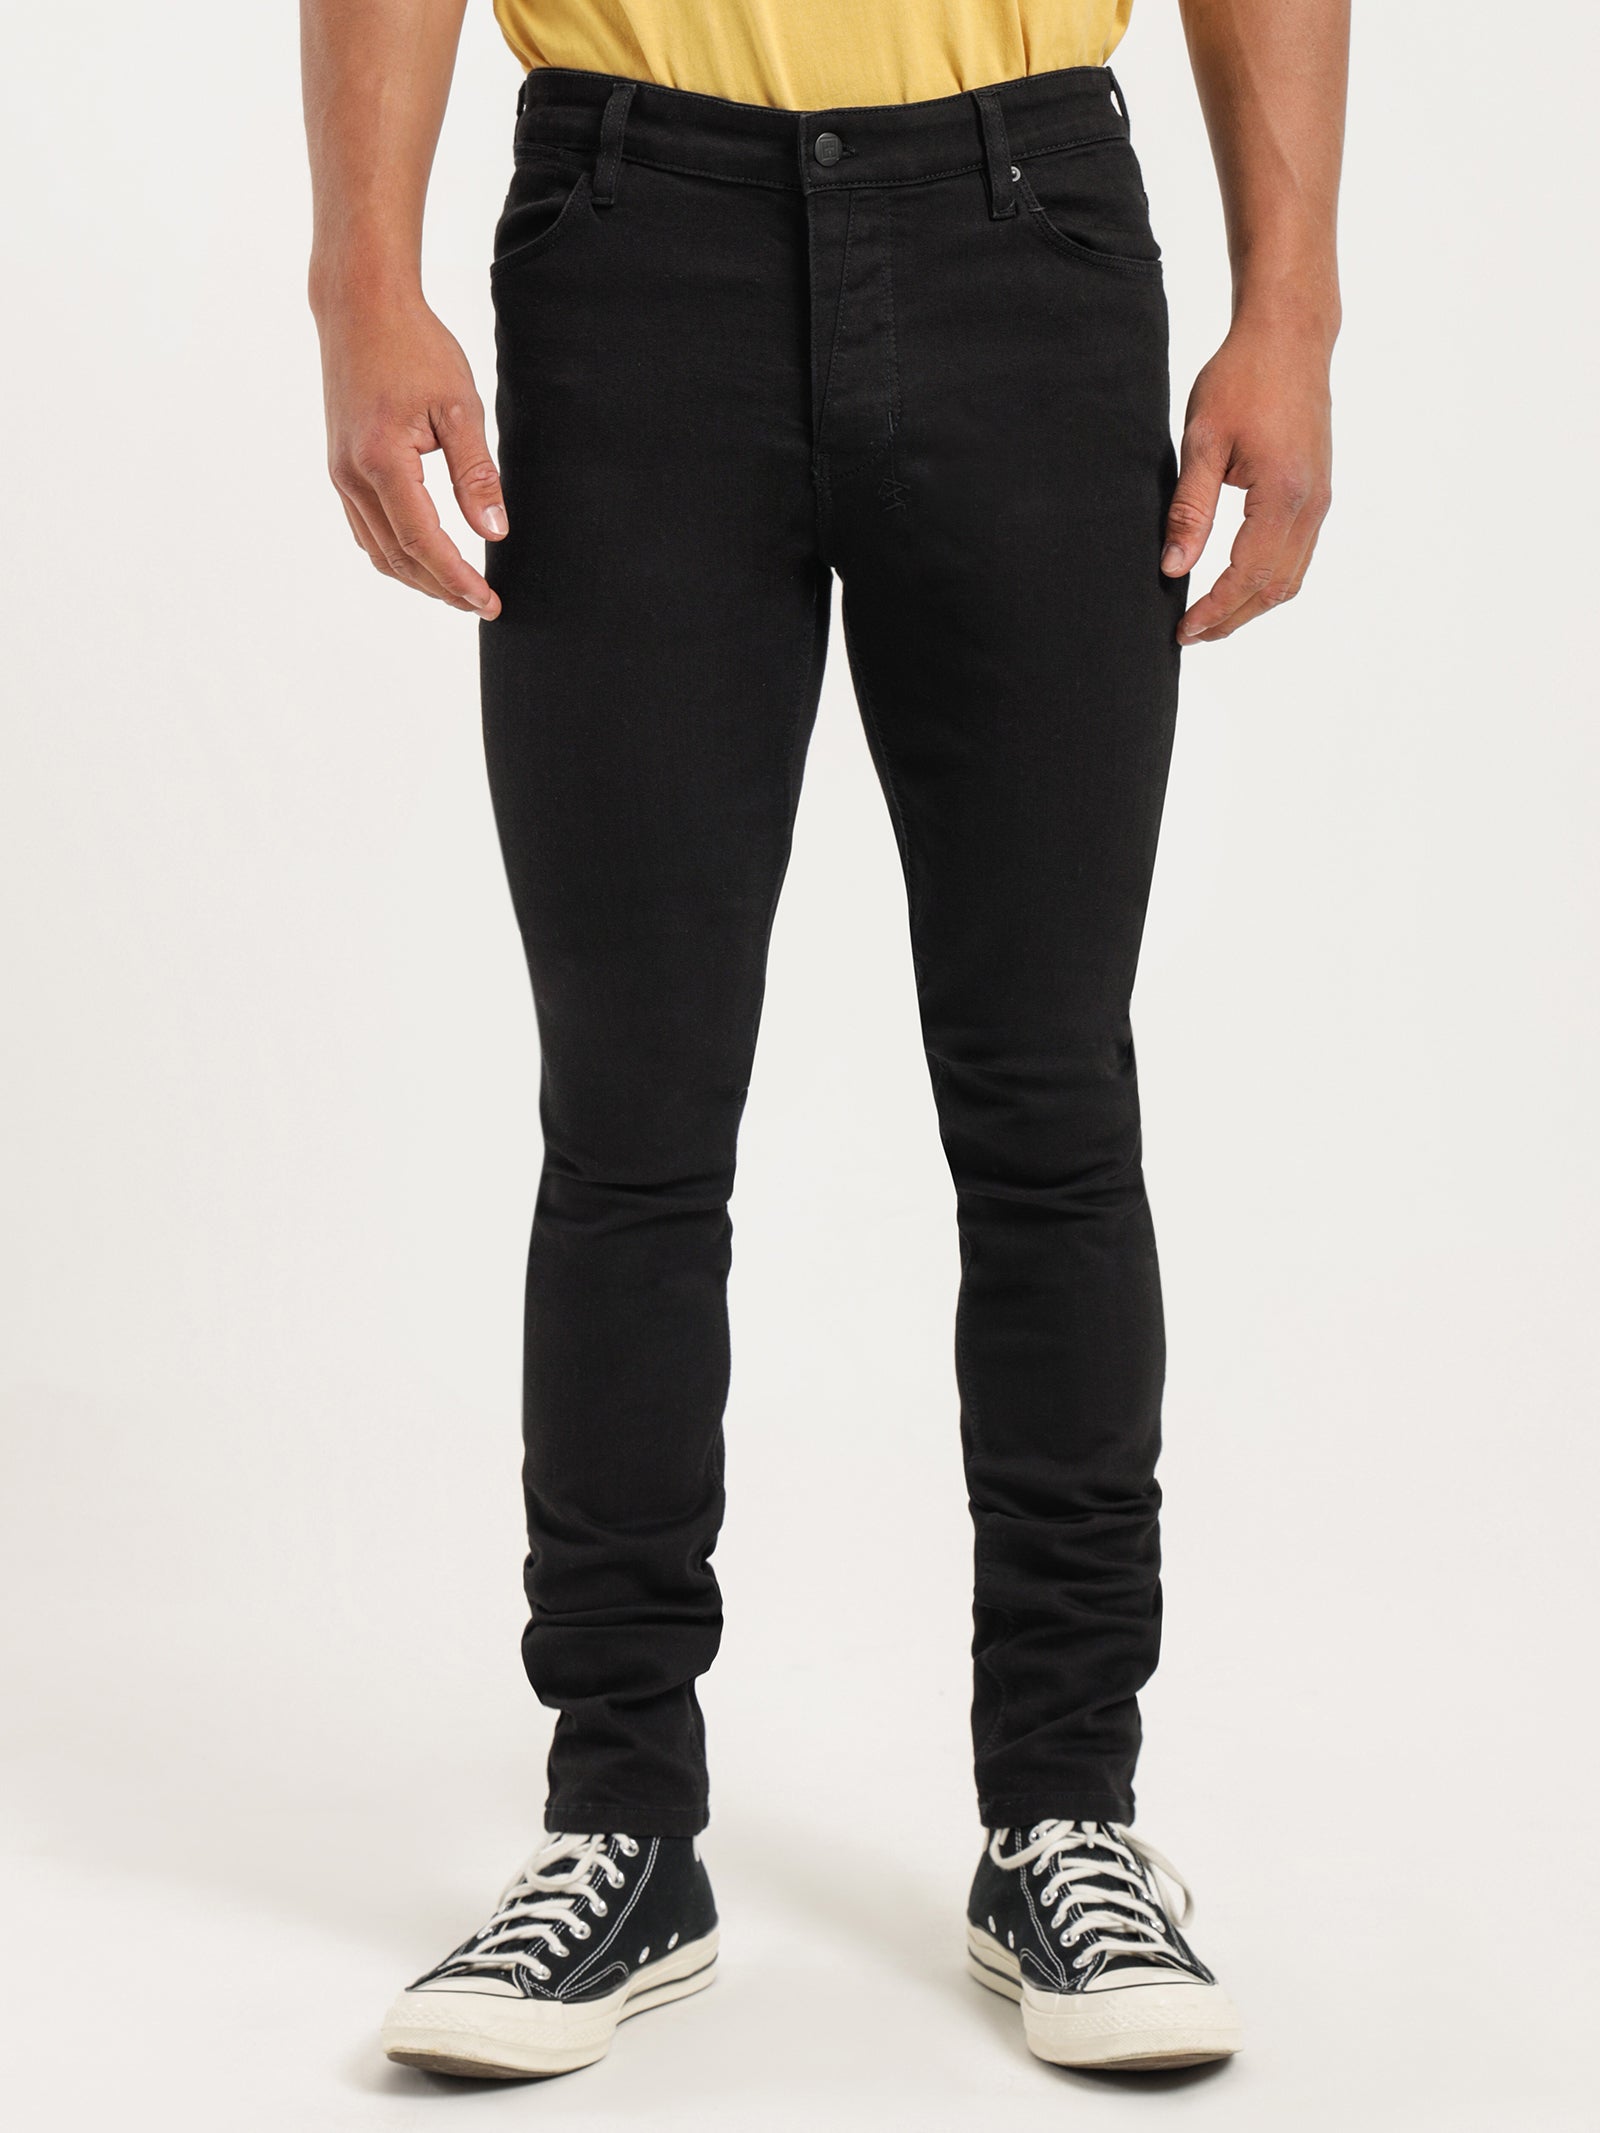 Van Winkle Skinny Jeans in Black Rebel - Glue Store